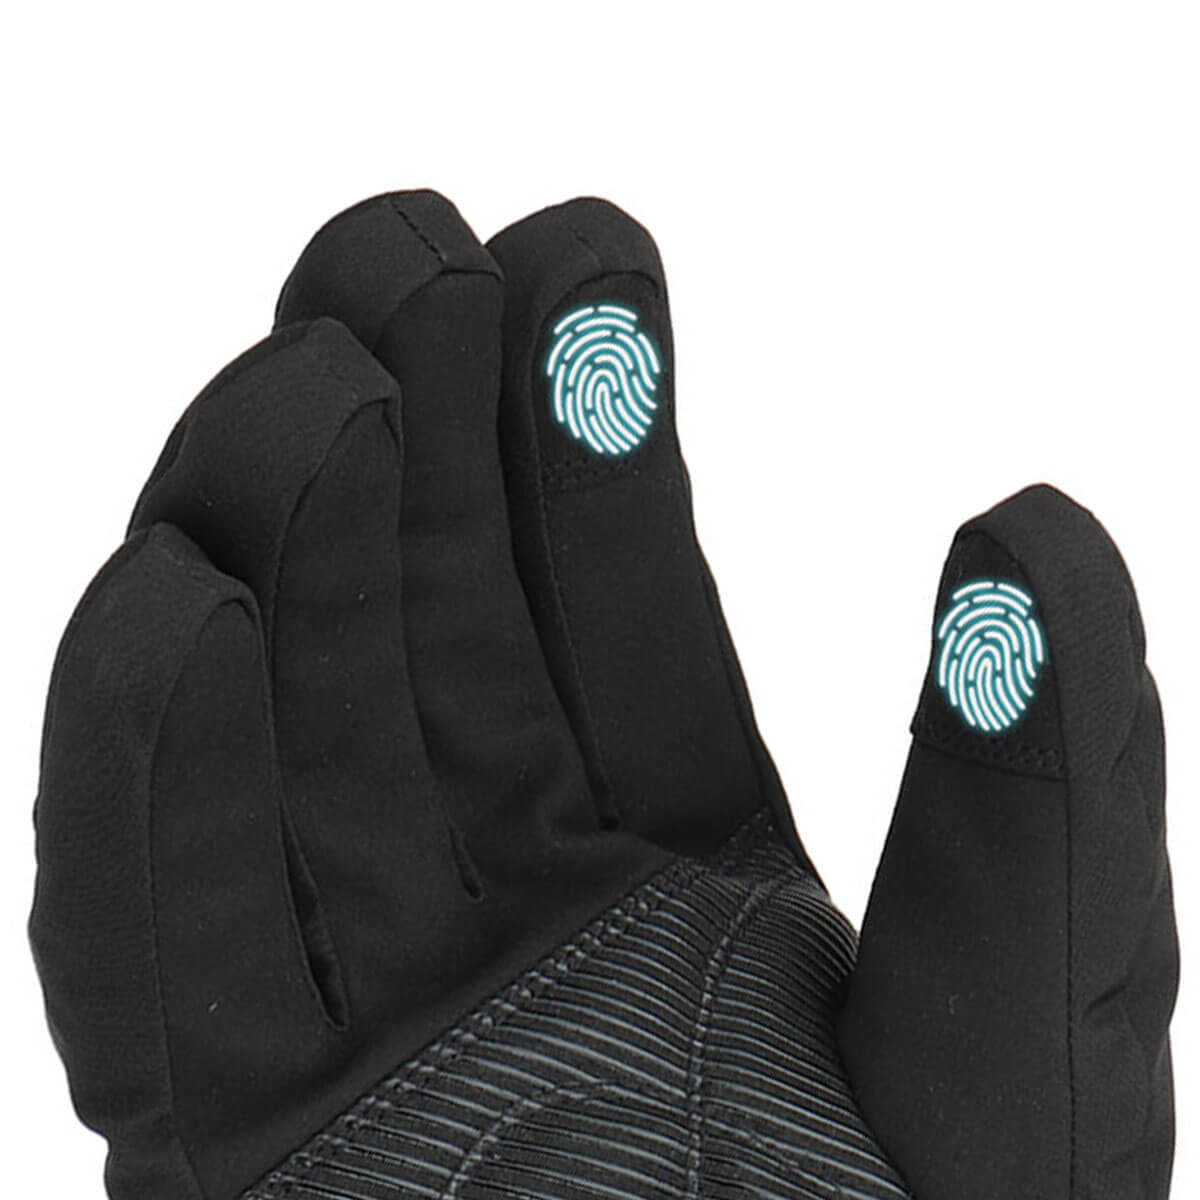 HG-01 Electric Heated Gloves, Waterproof Warm 1Pair Black